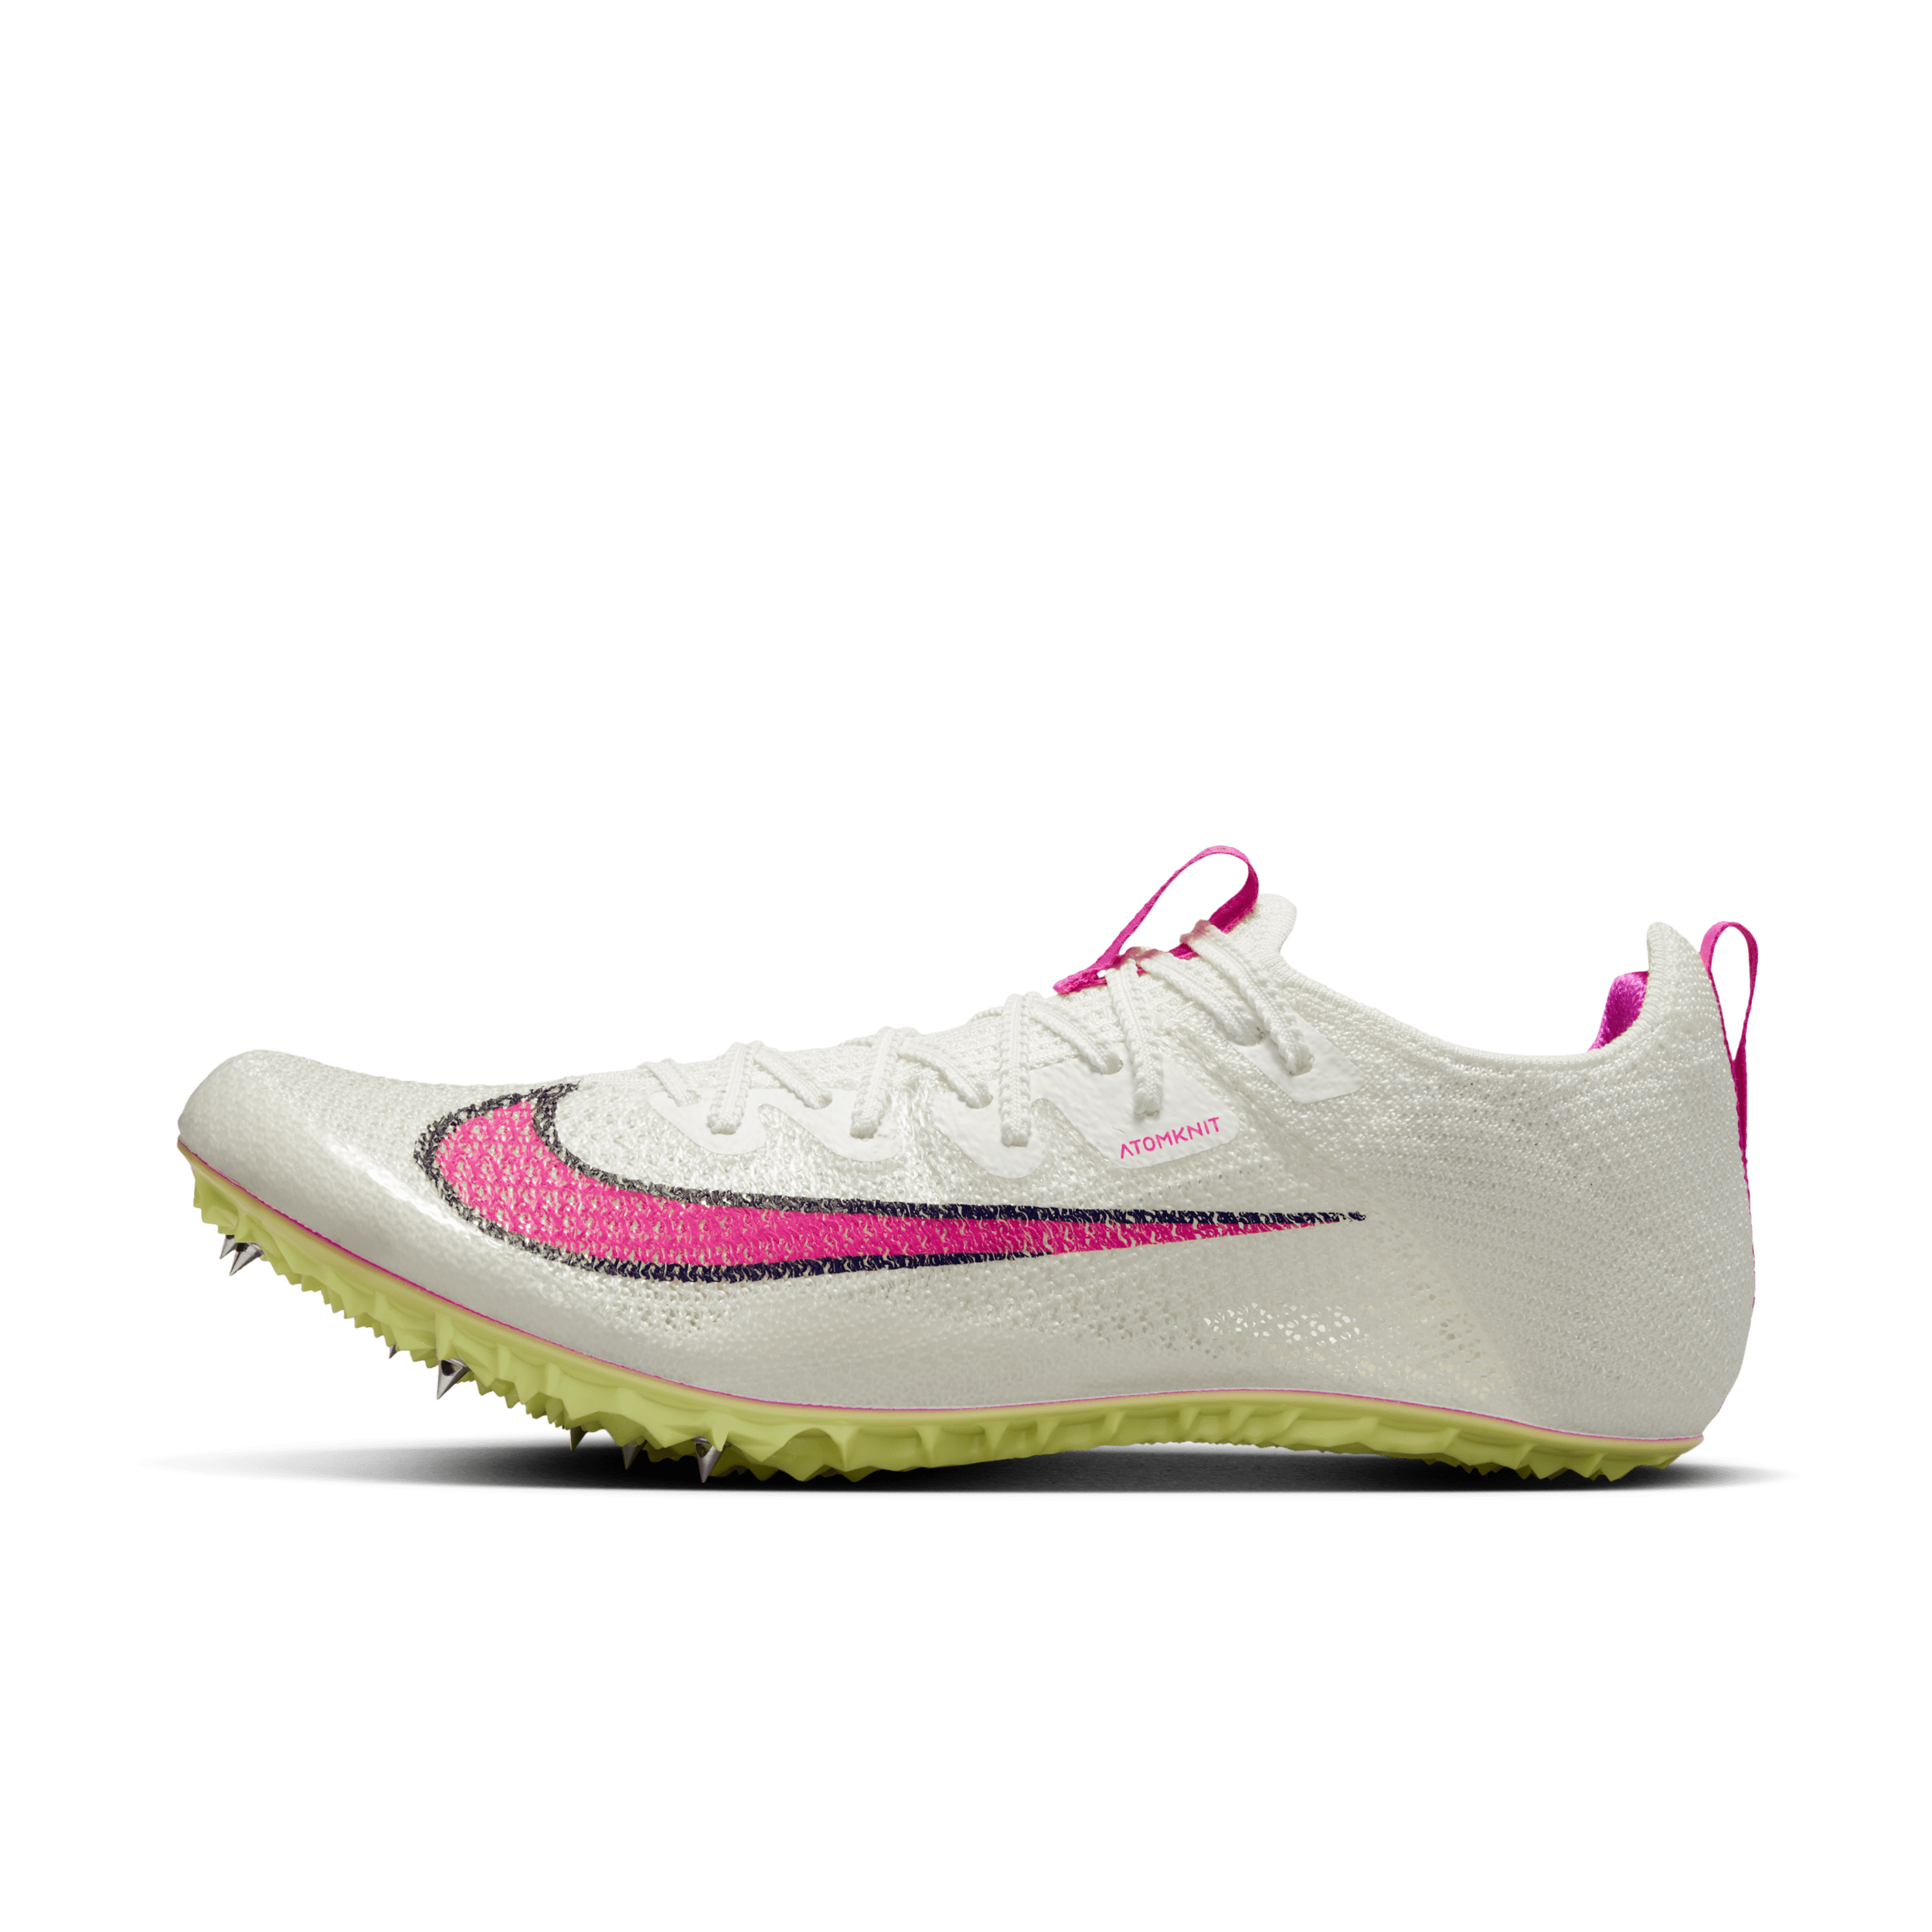 Nike Zoom Superfly Elite 2-pigsko til bane og sprint - hvid